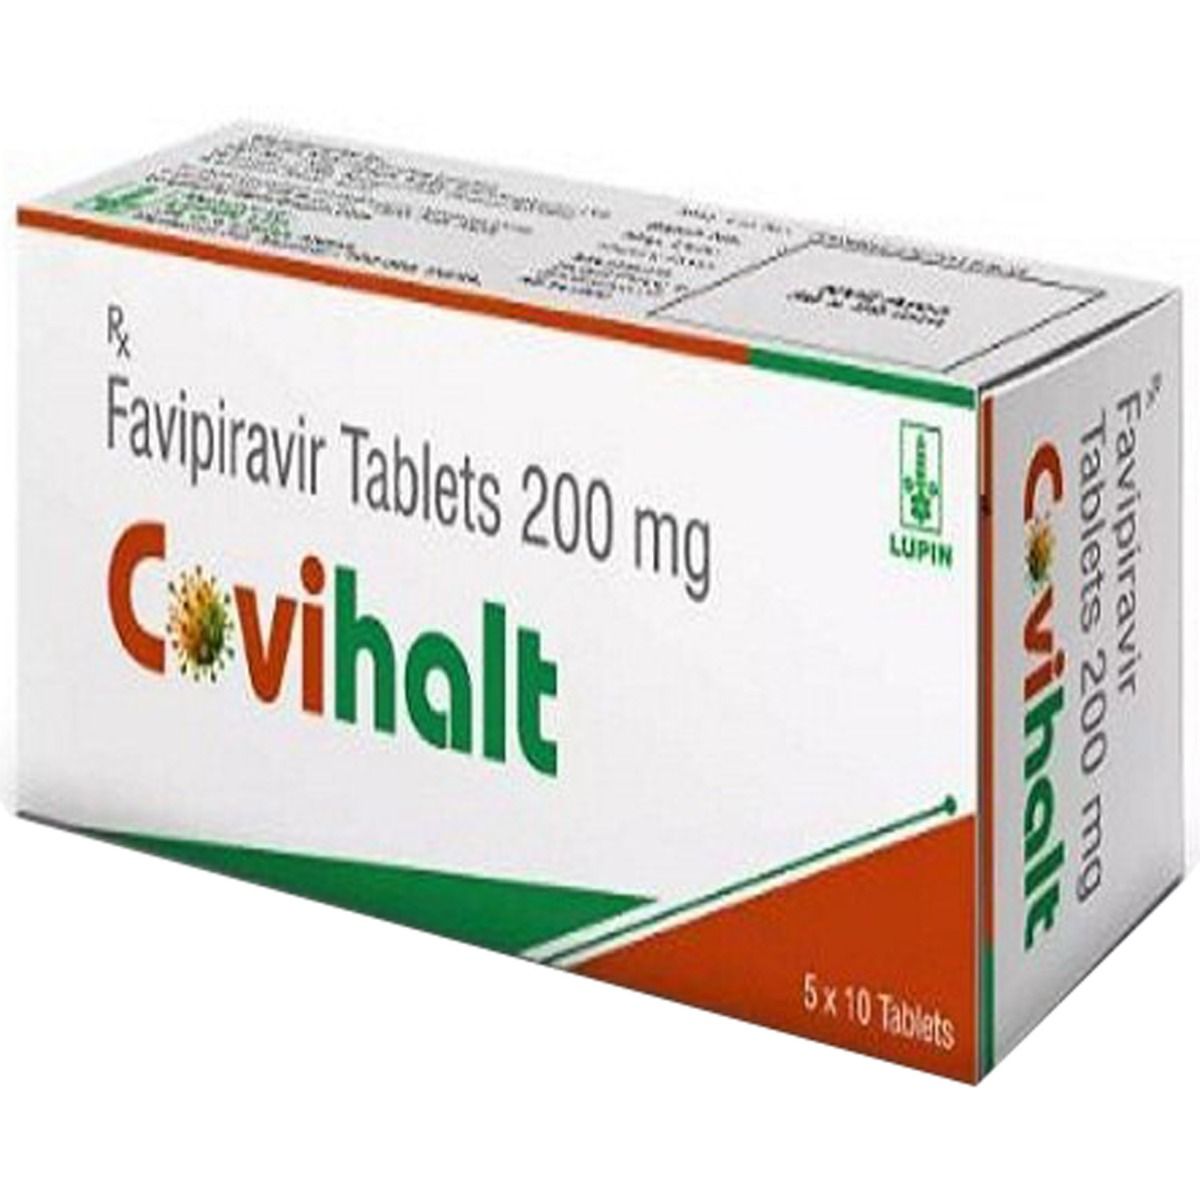 Buy Covihalt Tablet 10's Online